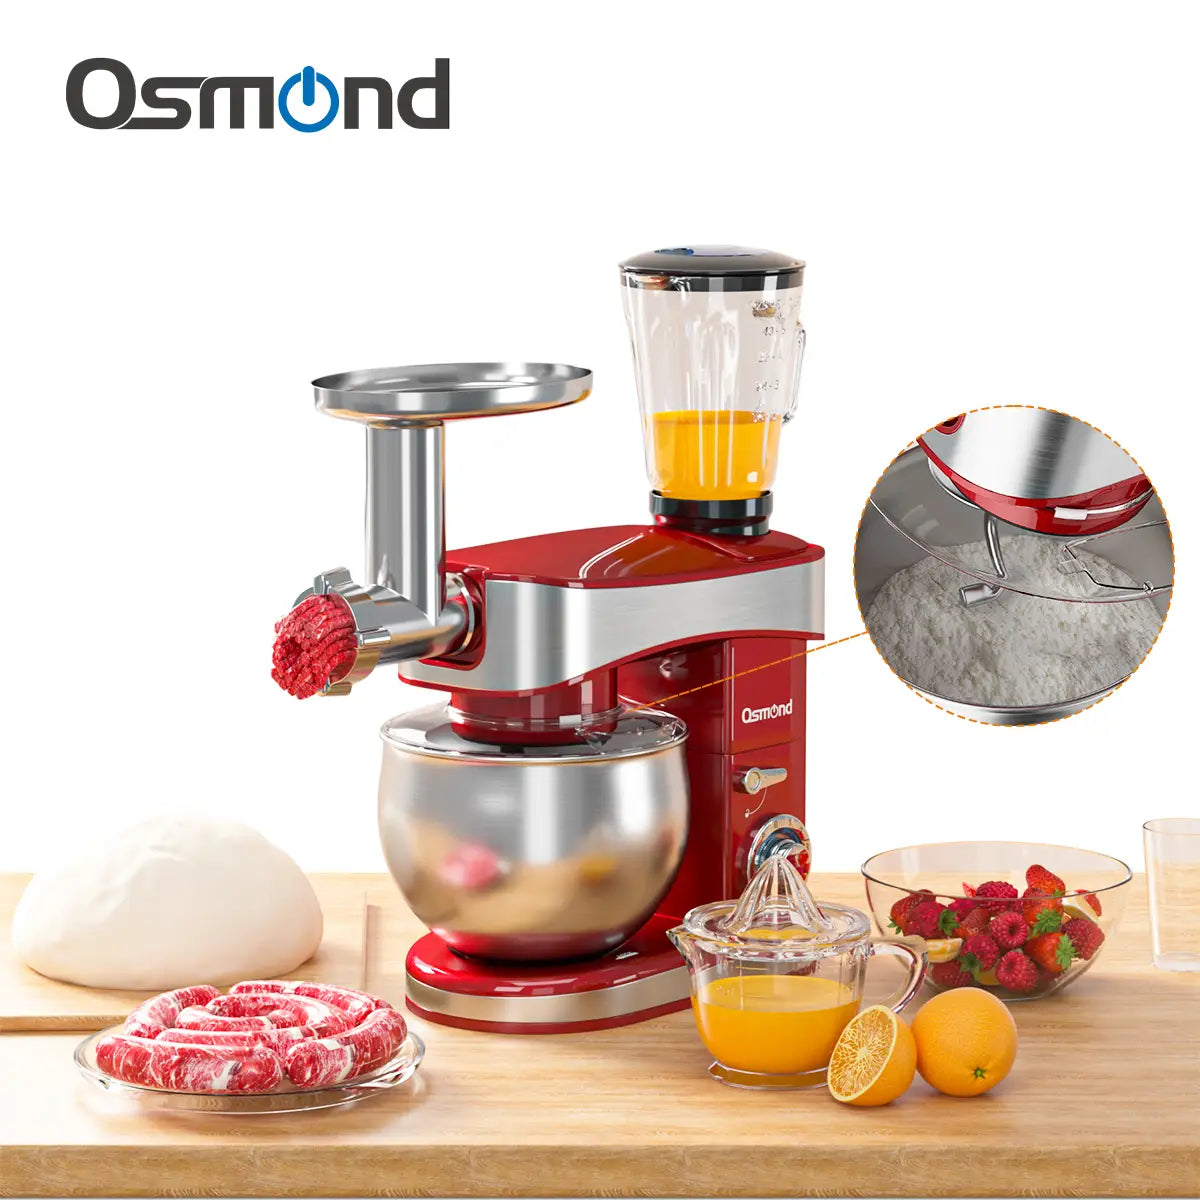 Osmond Sc-213c 1200w 6.5l 3-in-1 Kitchen Food Stand Mixer